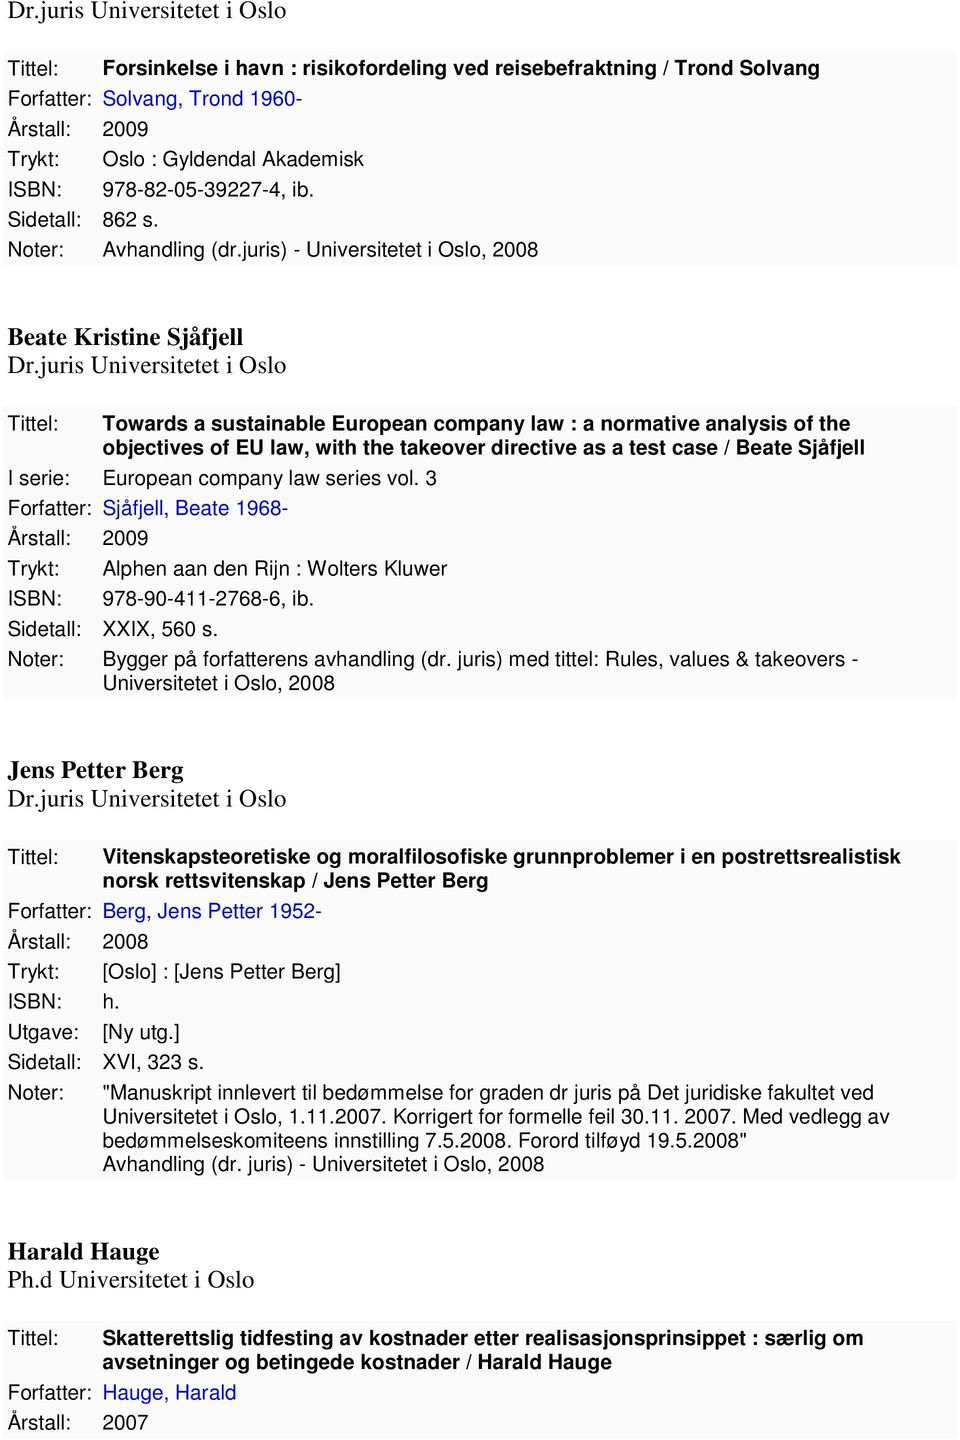 Beate Sjåfjell I serie: European company law series vol. 3 Forfatter: Sjåfjell, Beate 1968-2009 Alphen aan den Rijn : Wolters Kluwer 978-90-411-2768-6, ib. Sidetall: XXIX, 560 s.